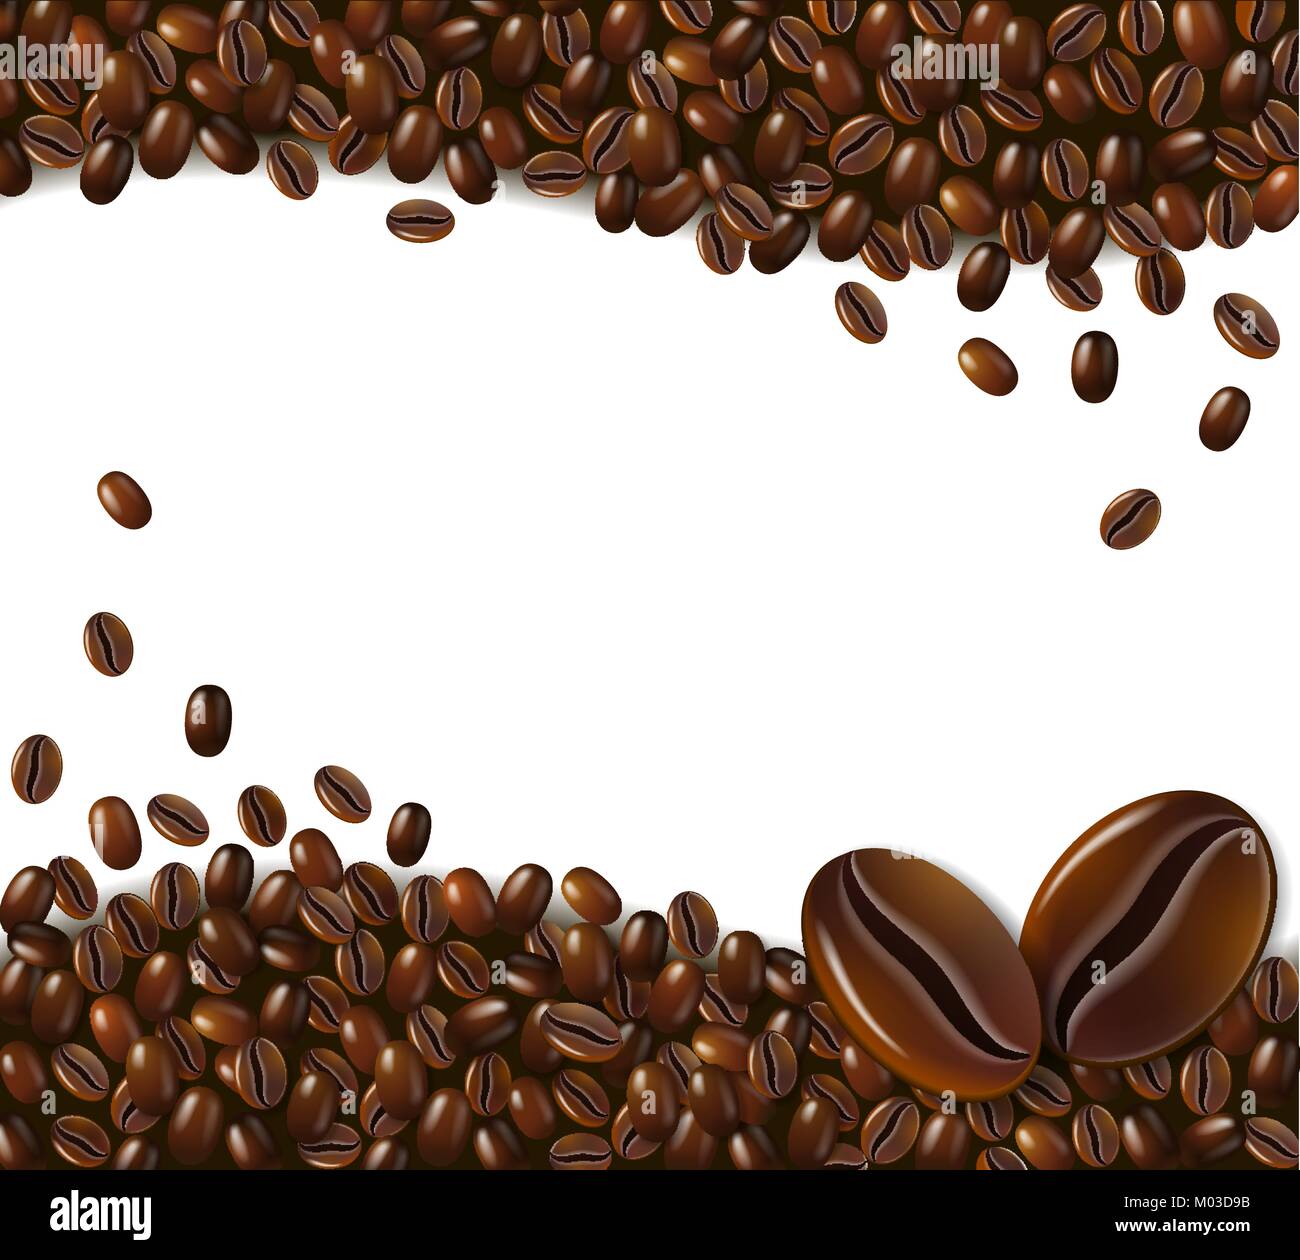 Les grains de café sur fond blanc Illustration de Vecteur